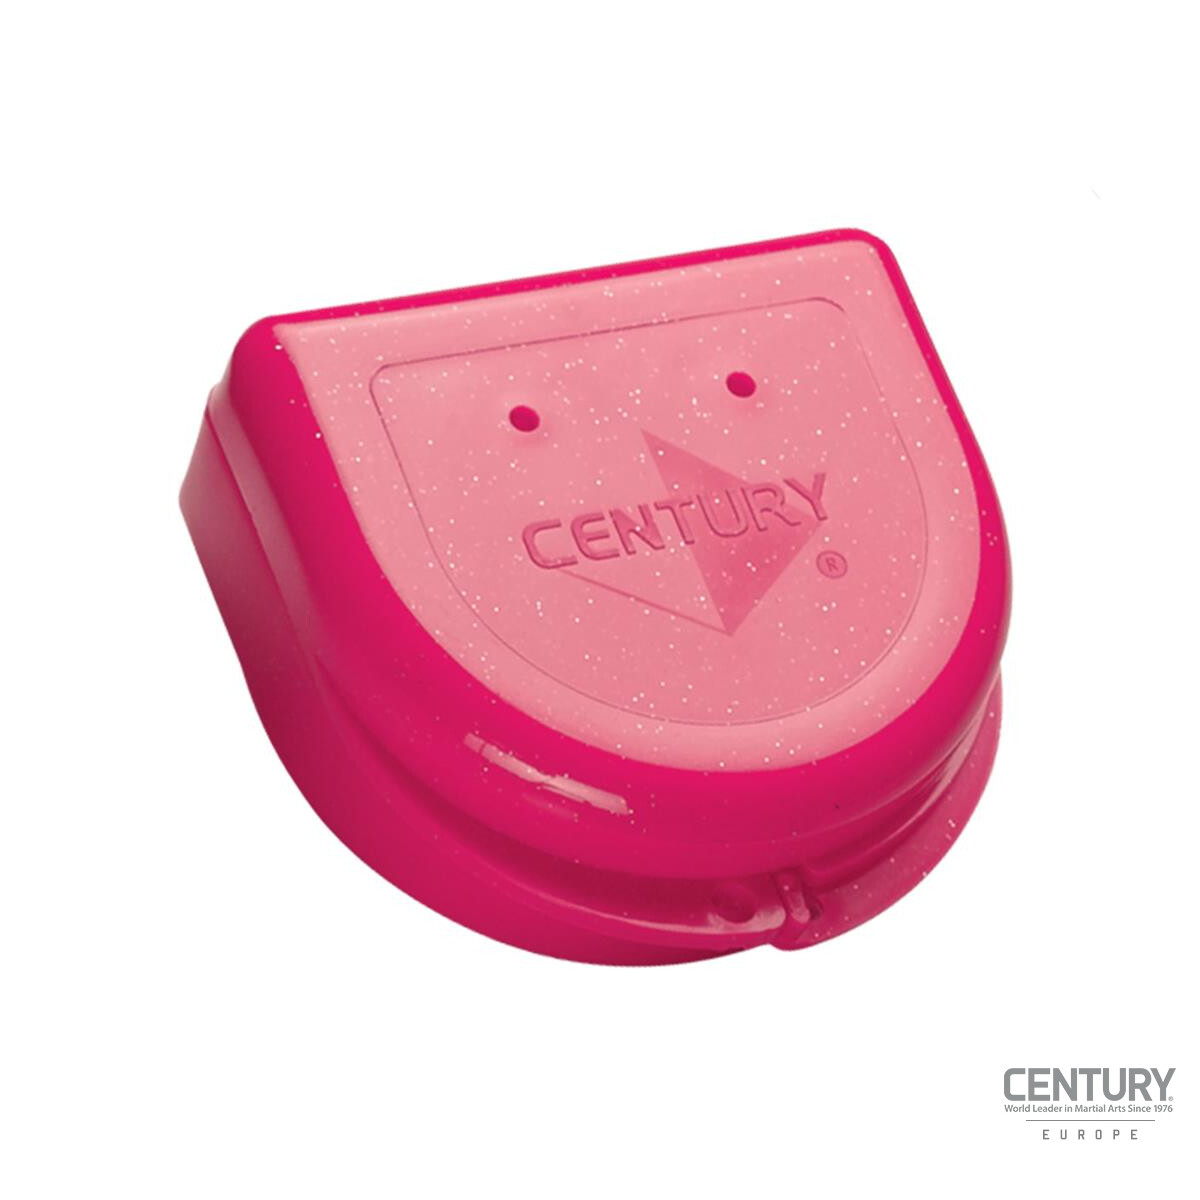 CENTURY Mundschutz Aufbewahrungsbox Pink Silber